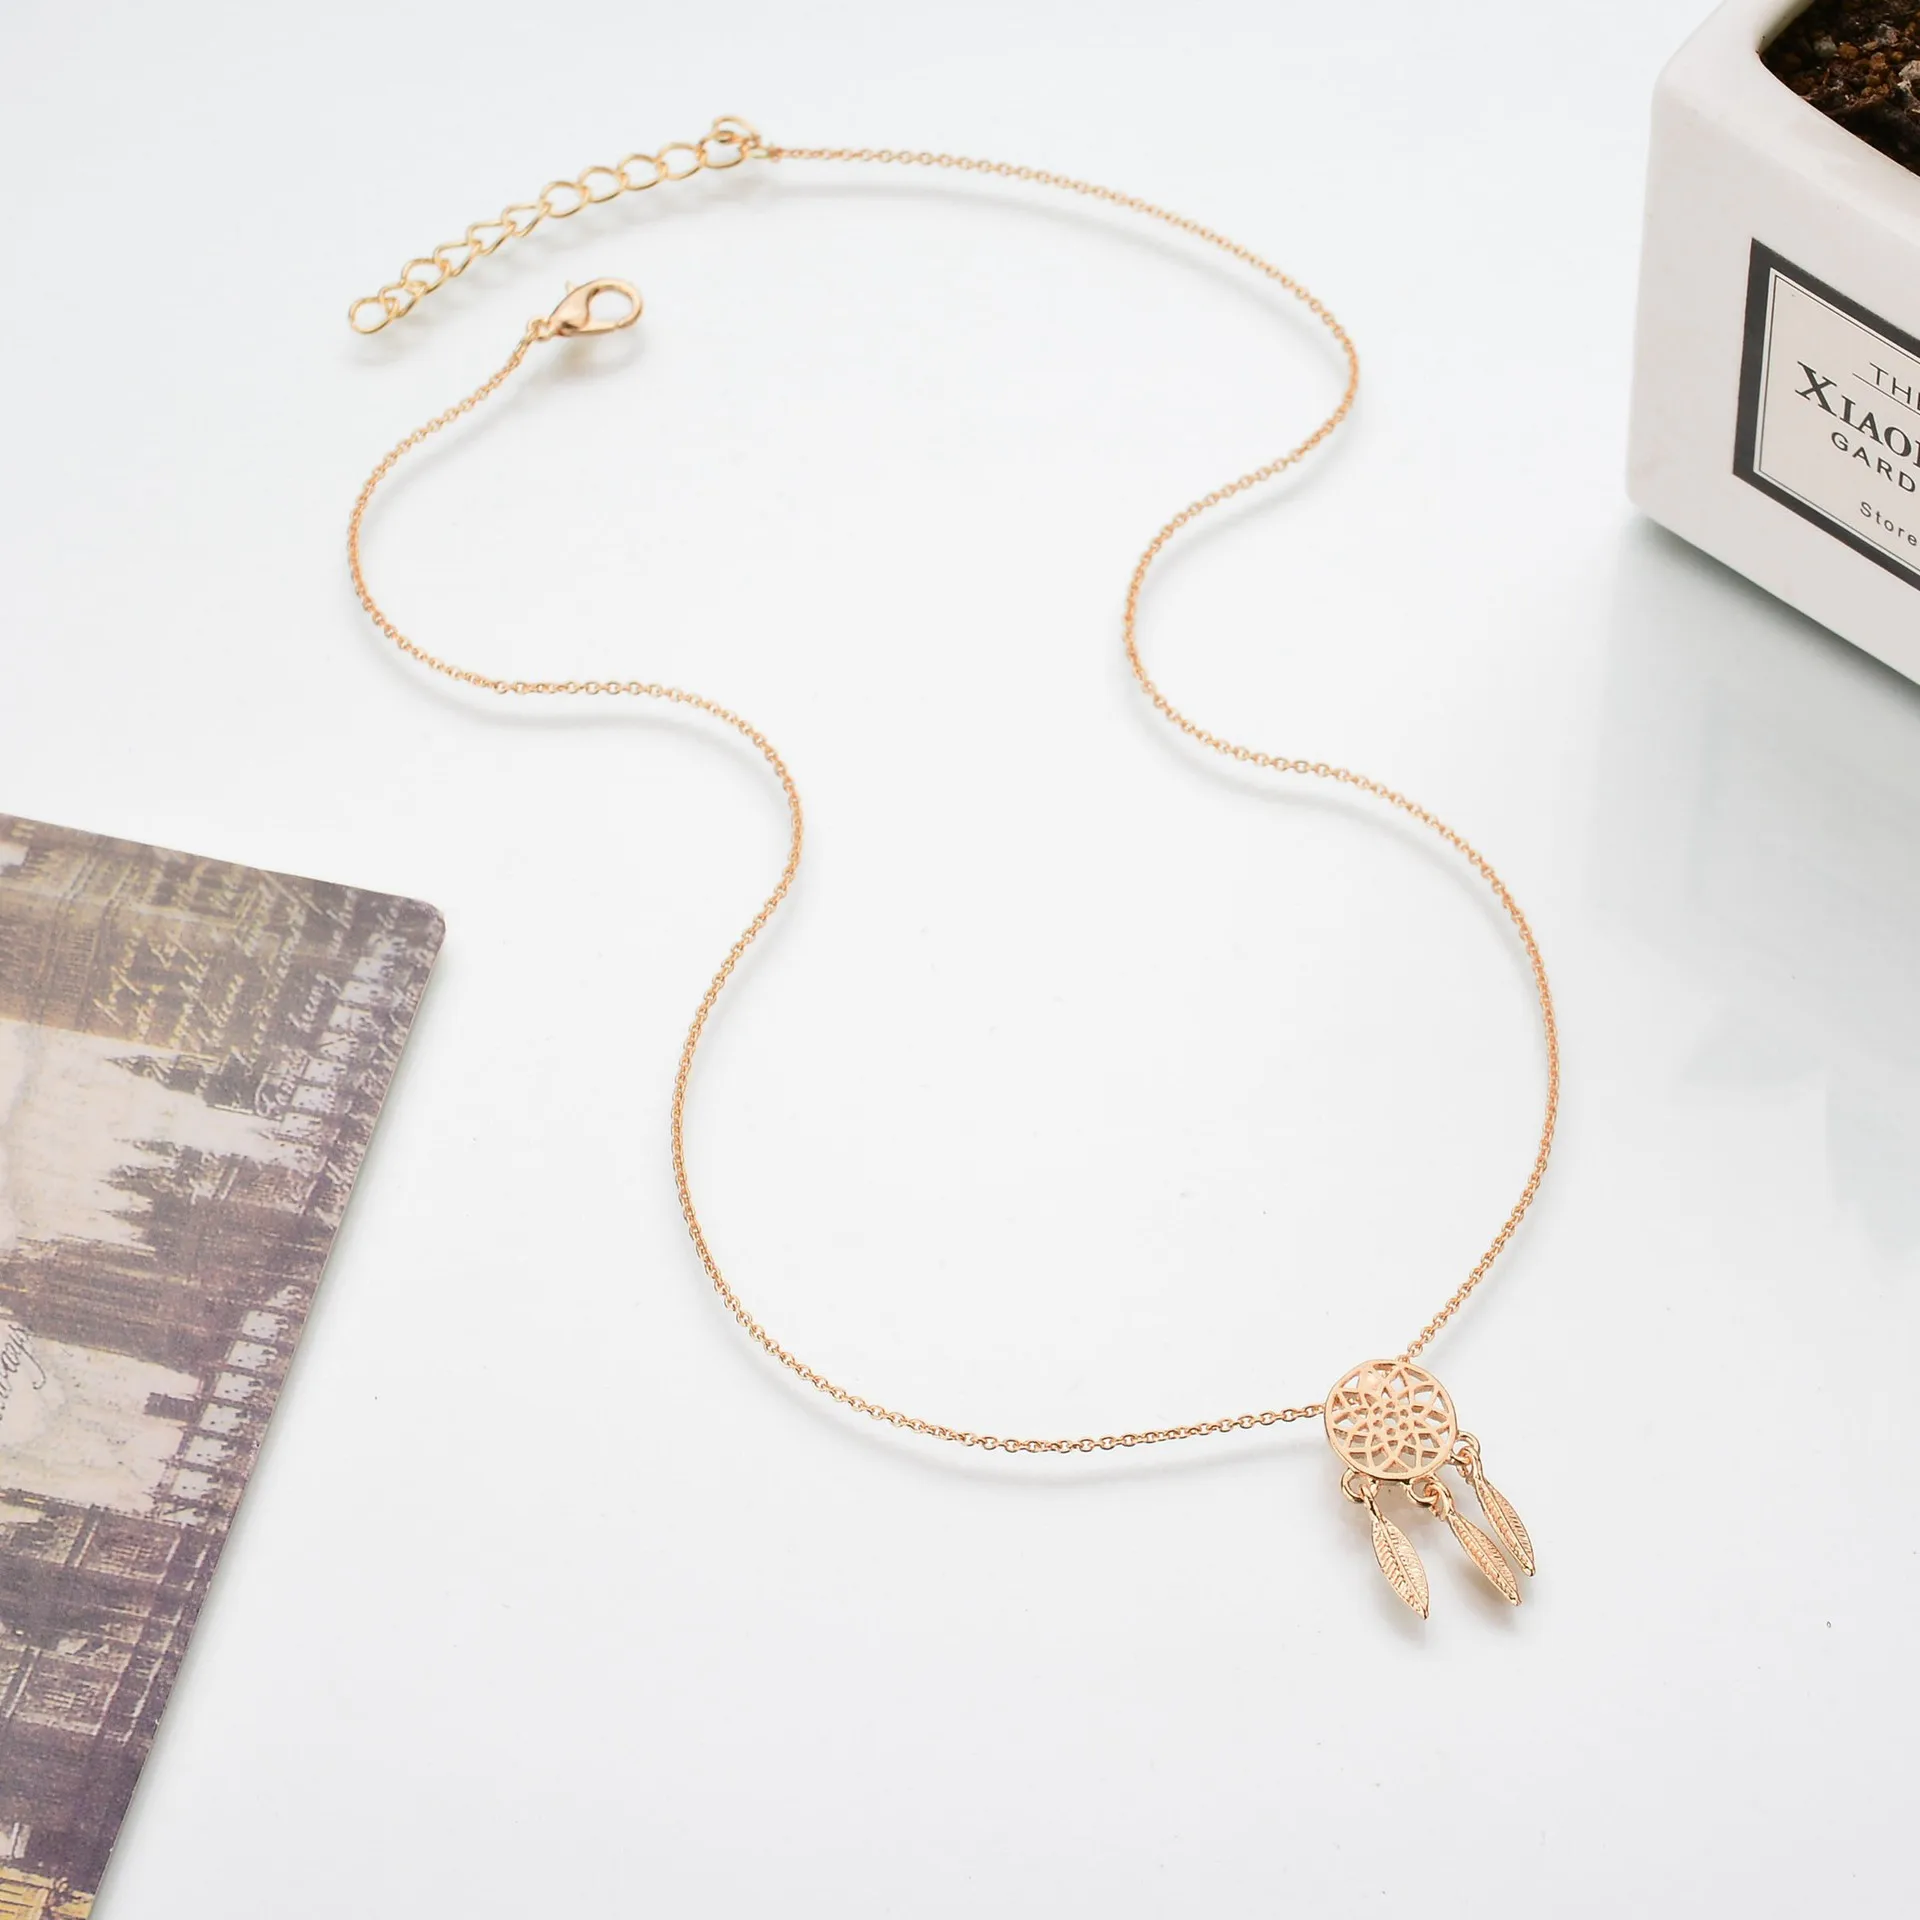 Новая мода Ловец снов ювелирные изделия серии ожерелье Изысканный сплав полое подвесное ожерелье популярное ожерелье цепочка подарки женские